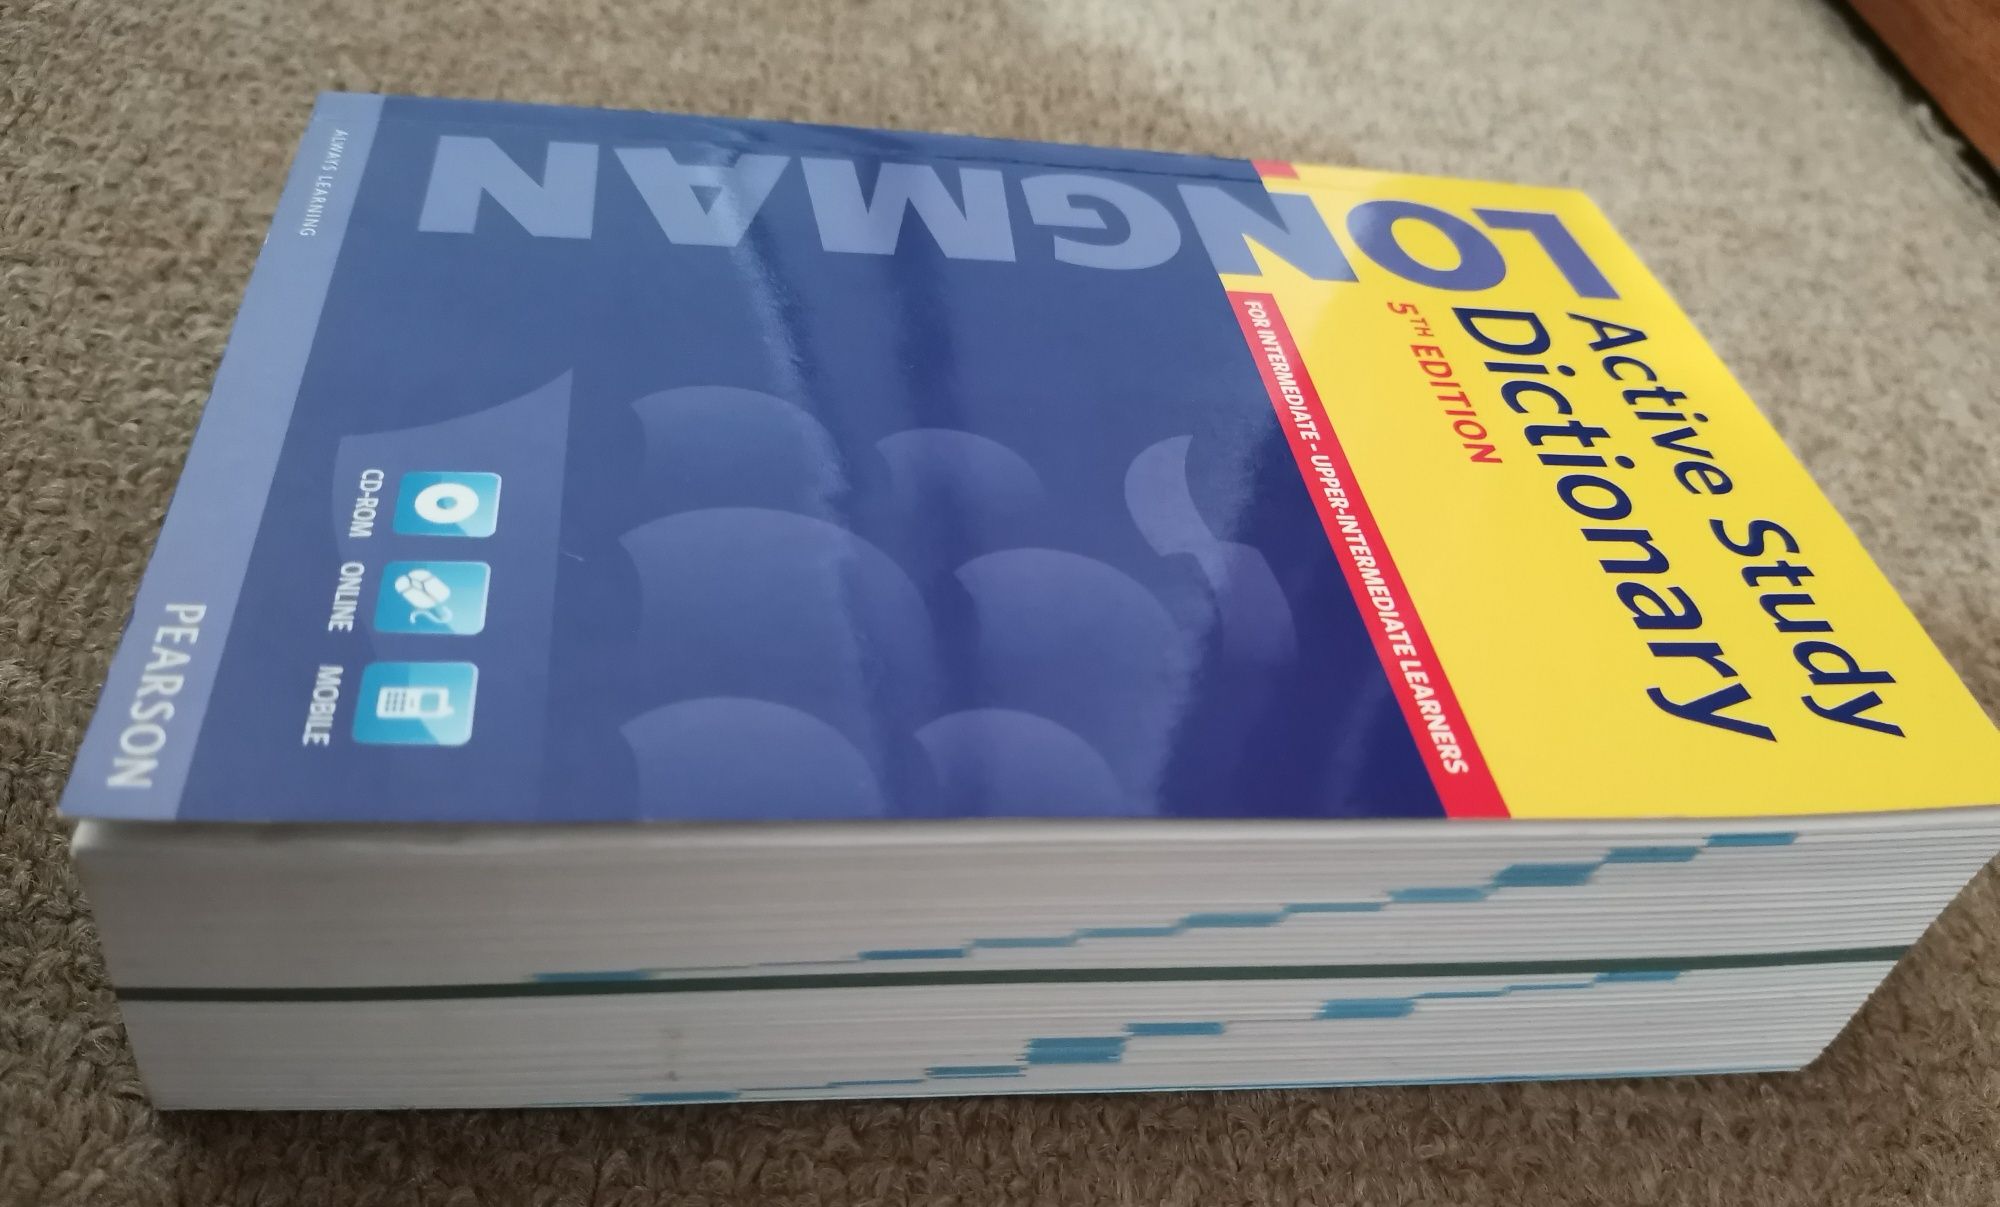 Dicionário de Inglês - Active Study Dictionary 5th Edition